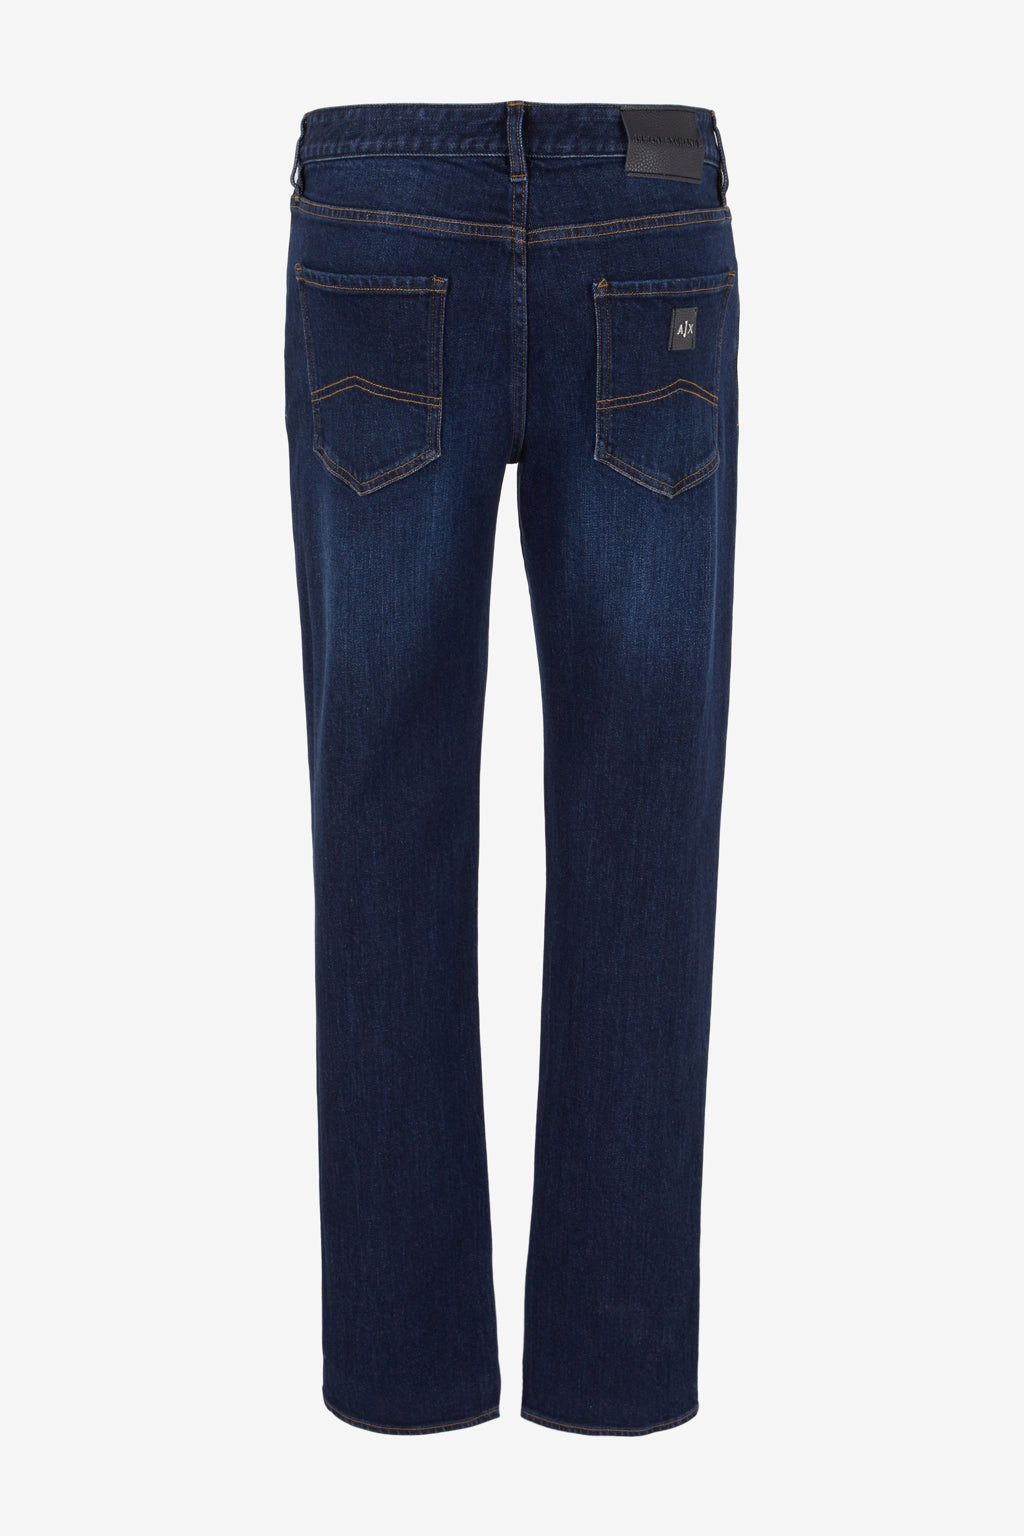 Armani Exchange J13 Slim Fit Jeans Z2SHZ 1500 Indigo Denim